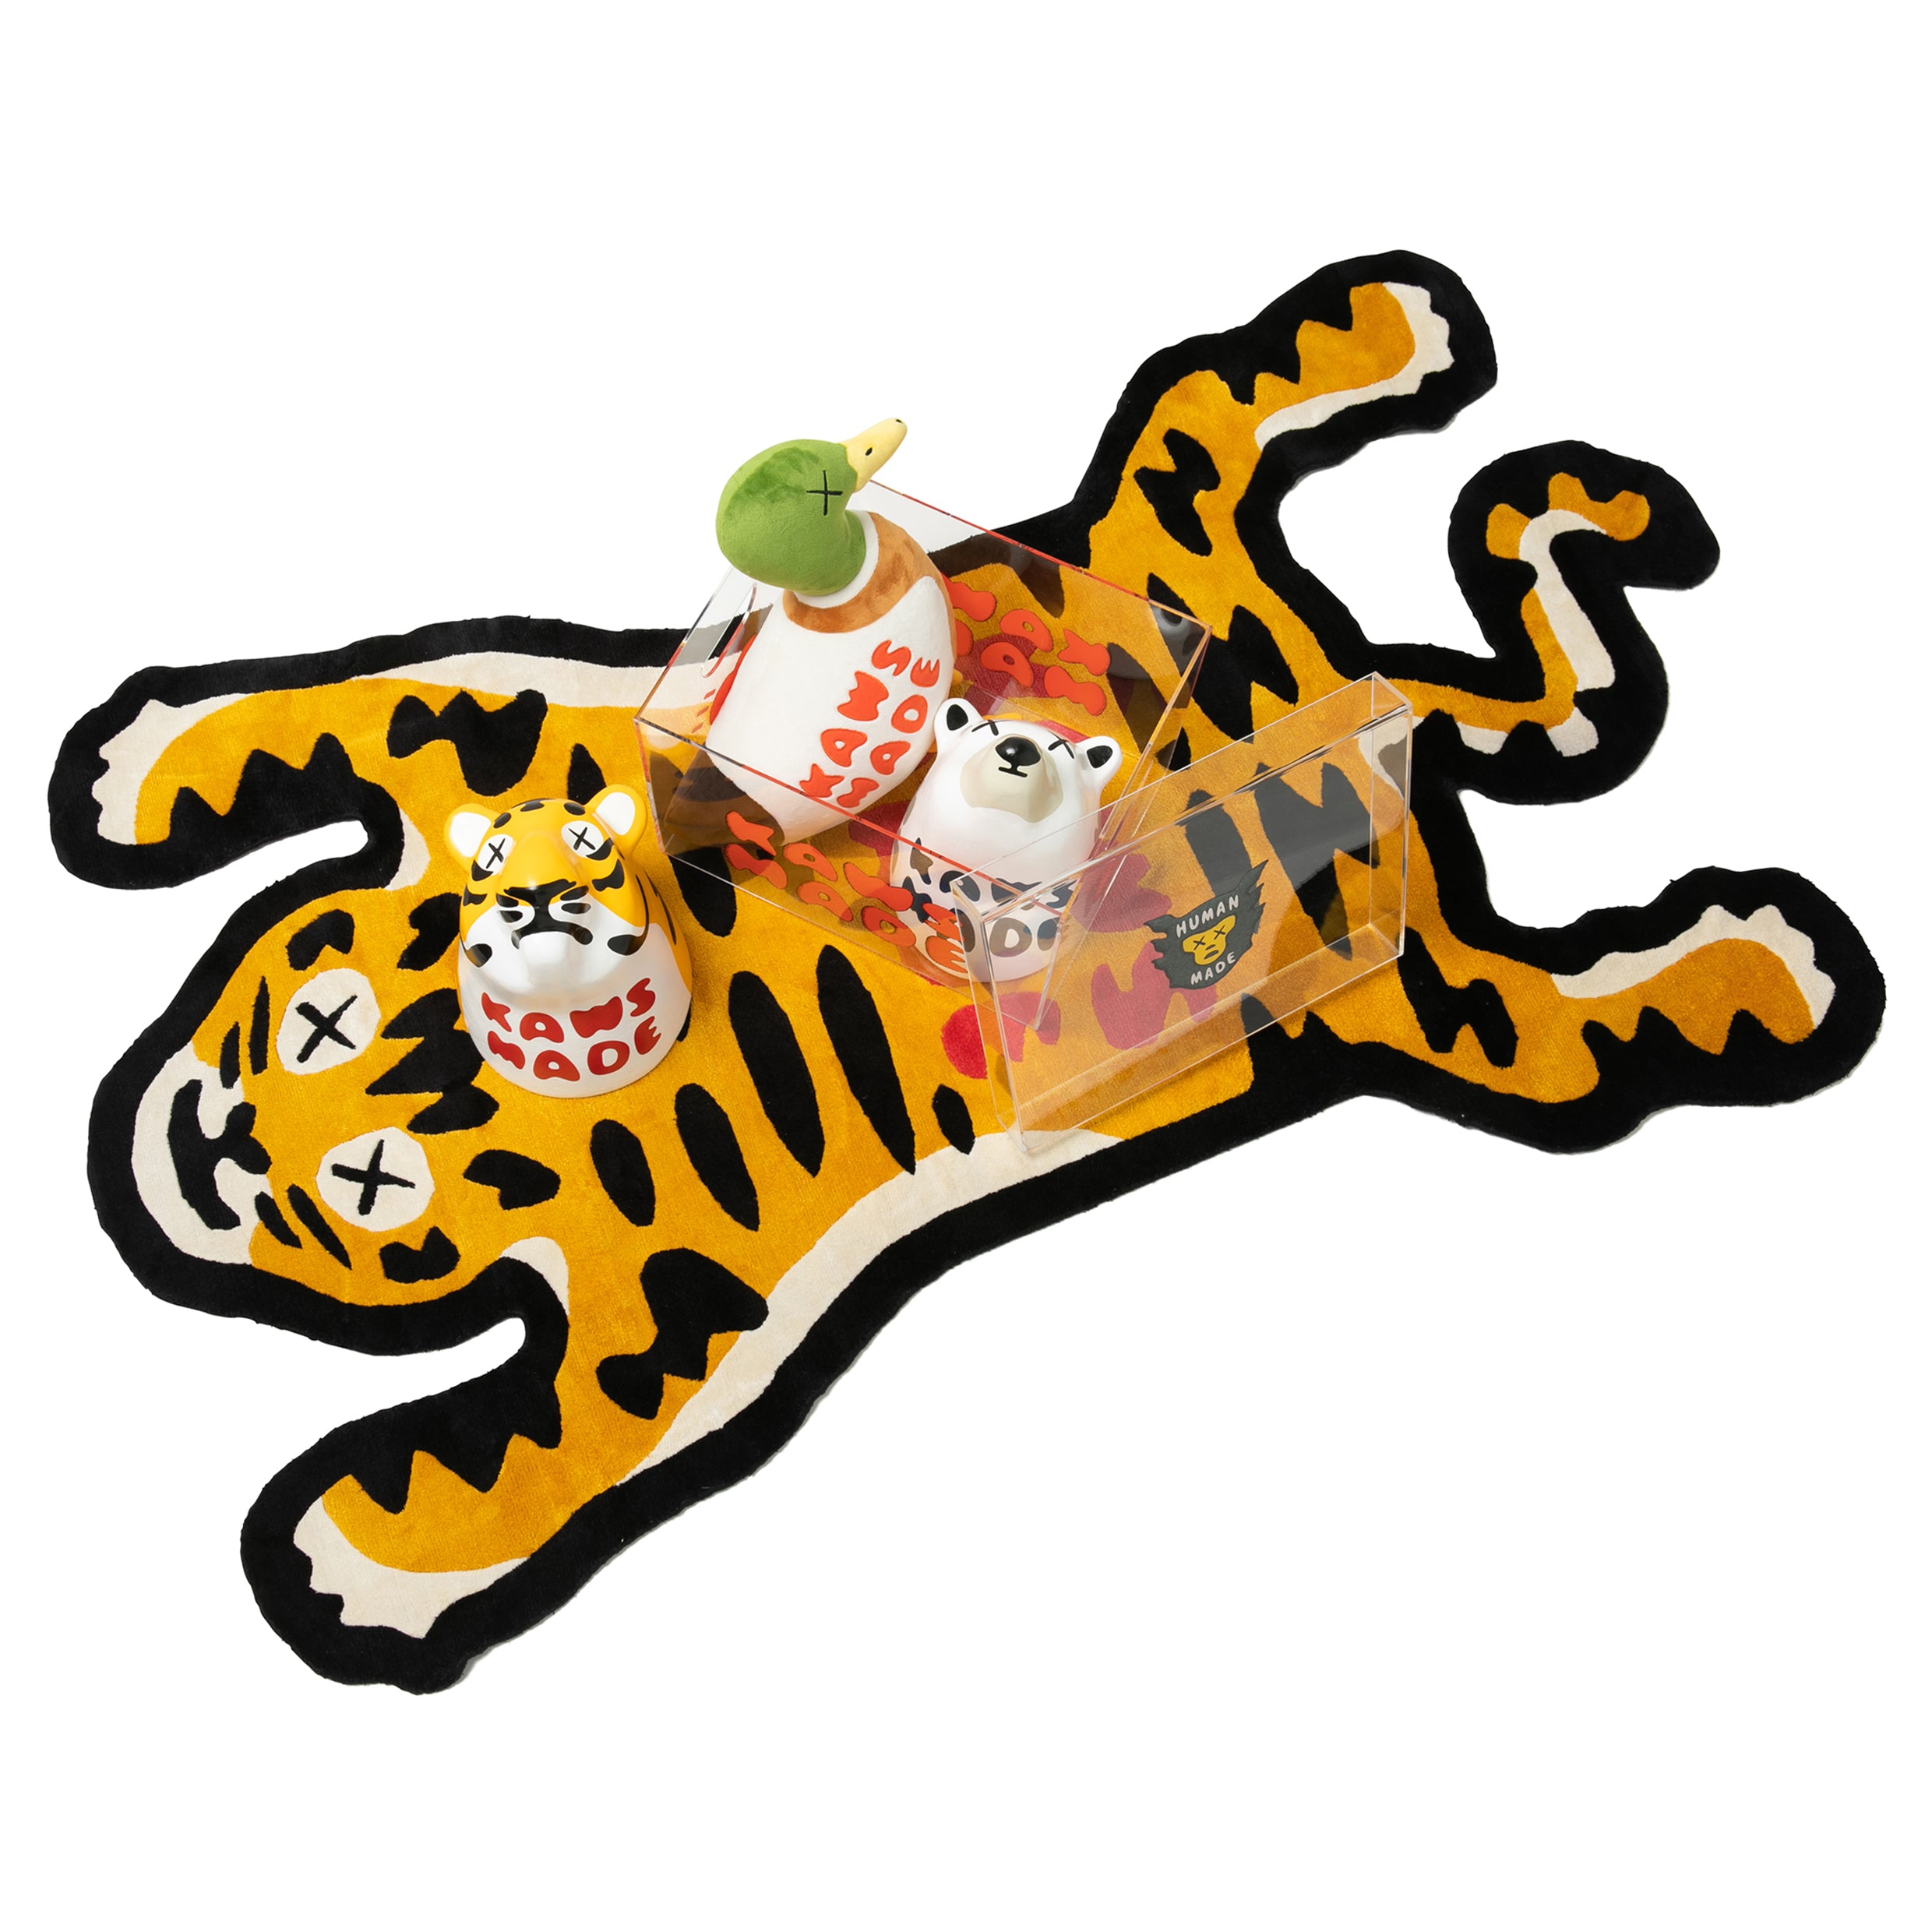 クッション・座布団Human Made KAWS MADE CUSHION #1 Tiger